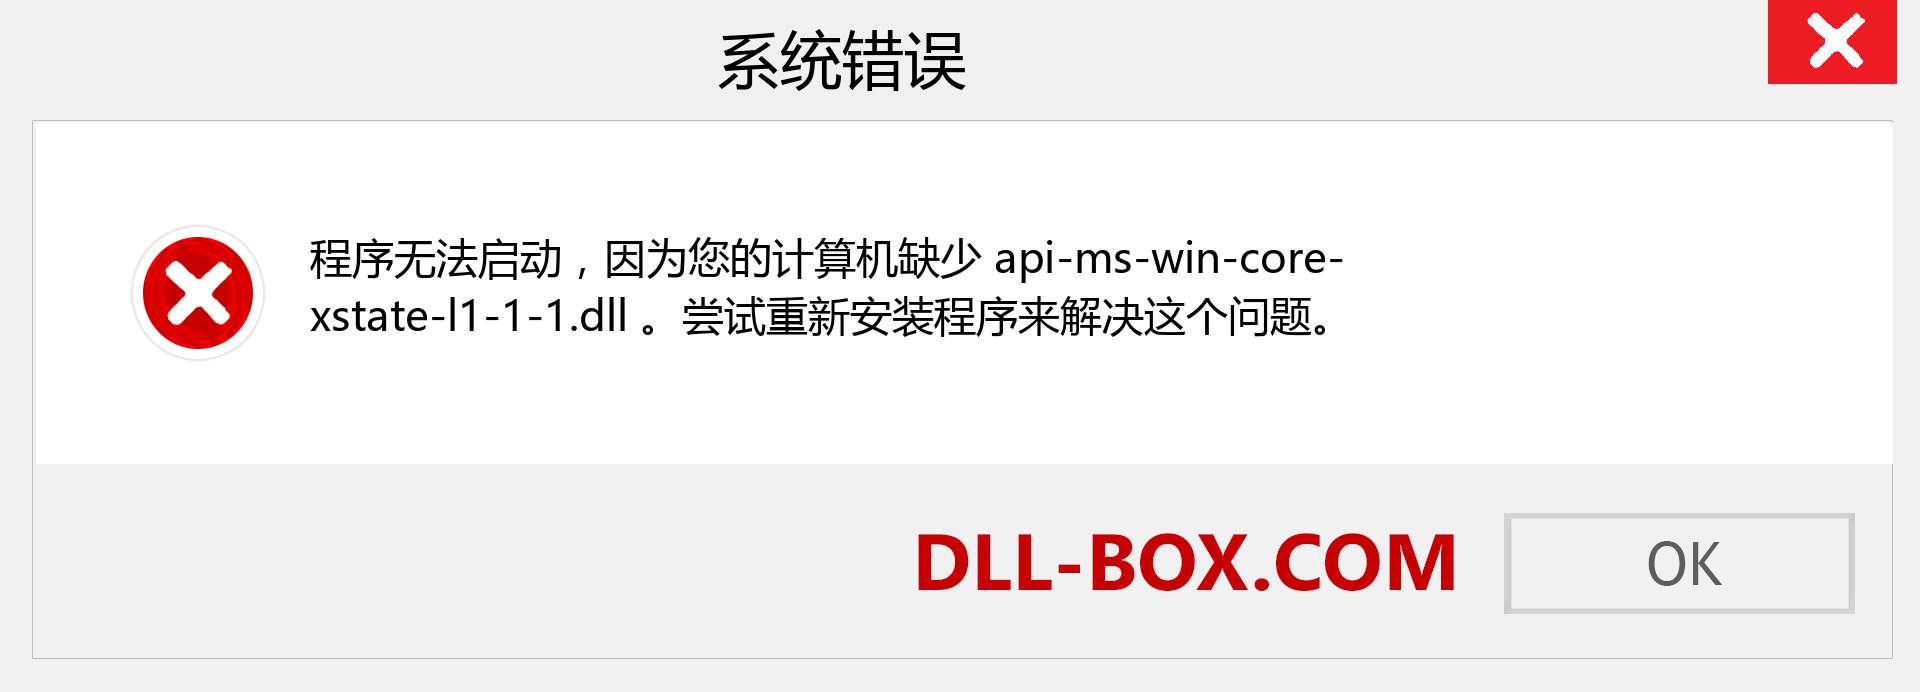 api-ms-win-core-xstate-l1-1-1.dll 文件丢失？。 适用于 Windows 7、8、10 的下载 - 修复 Windows、照片、图像上的 api-ms-win-core-xstate-l1-1-1 dll 丢失错误